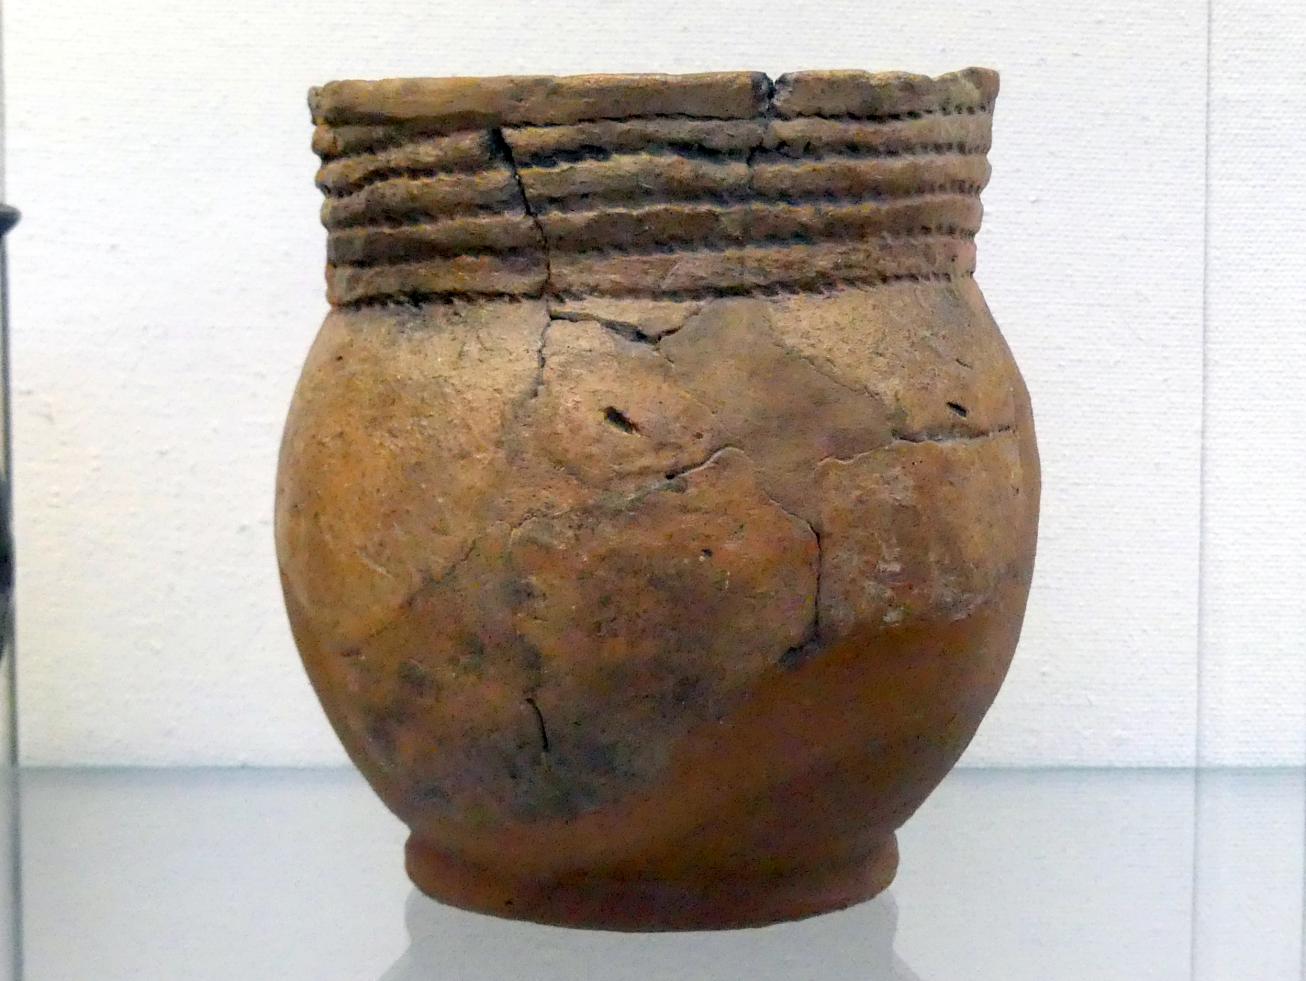 Doppelhenkelgefäß, Endneolithikum, 2800 - 1700 v. Chr., Bild 1/2